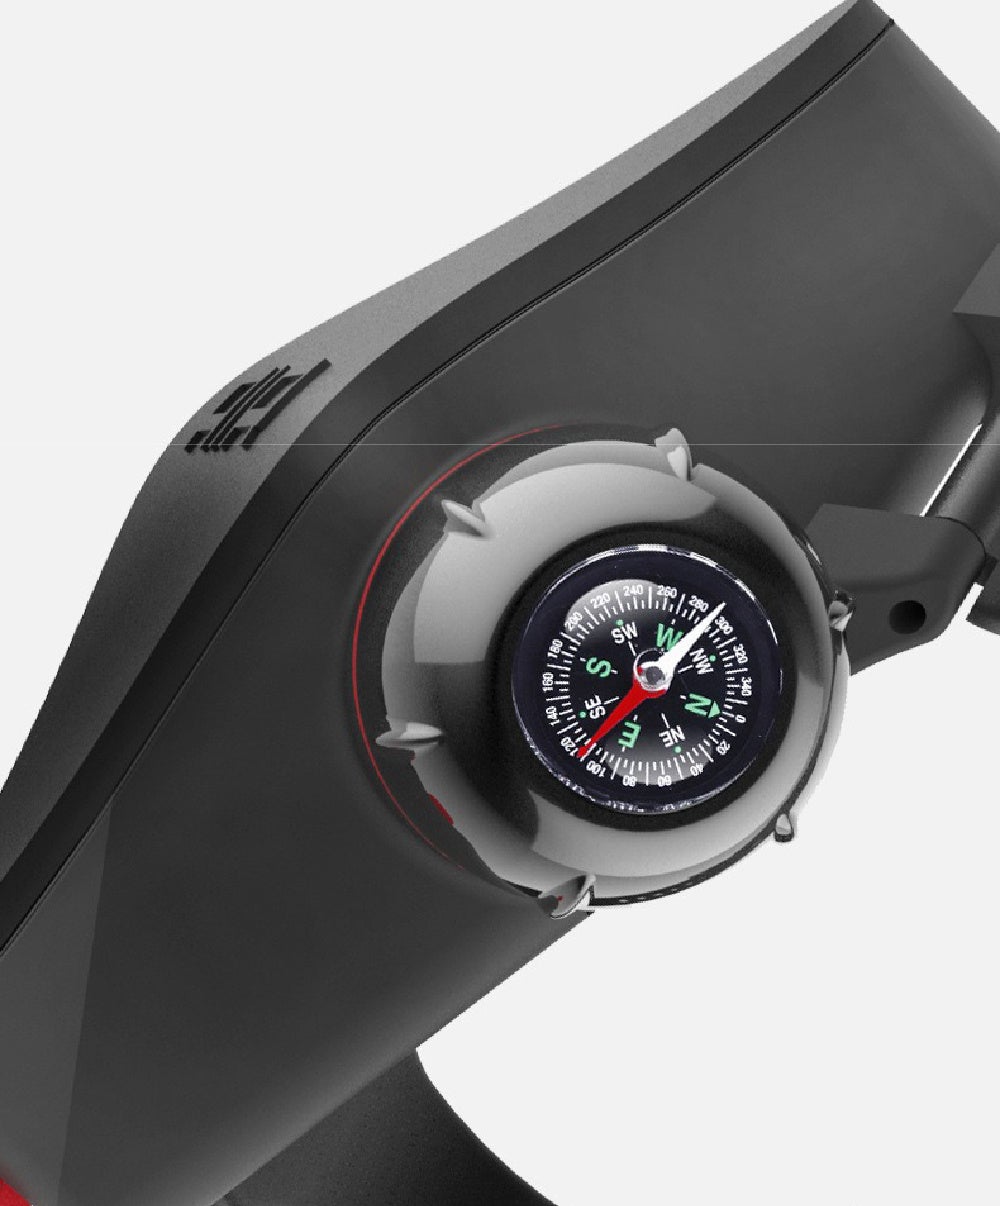 マリンスポーツで安心な腕時計タイプのコンパクトなエアバッグ・起動後約3秒でエアバッグが膨らむ「Gamp-Air」をガジェットストア「MODERN g」で販売開始のサブ画像7